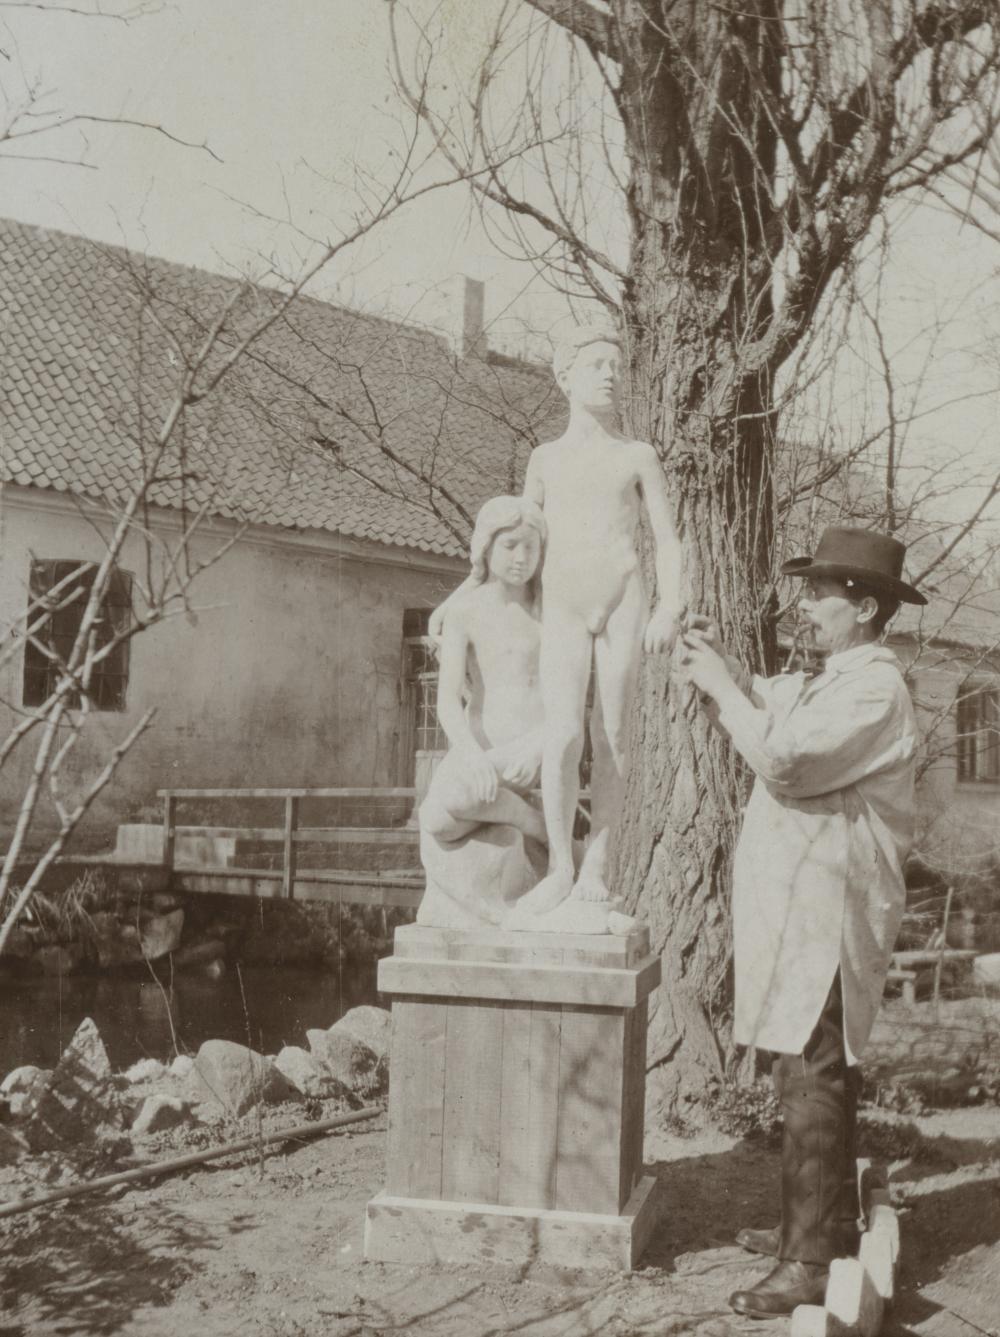 Billedhuggeren Just Nielsen Sondrup arbejder med skulpturen ”Forår”, 1934